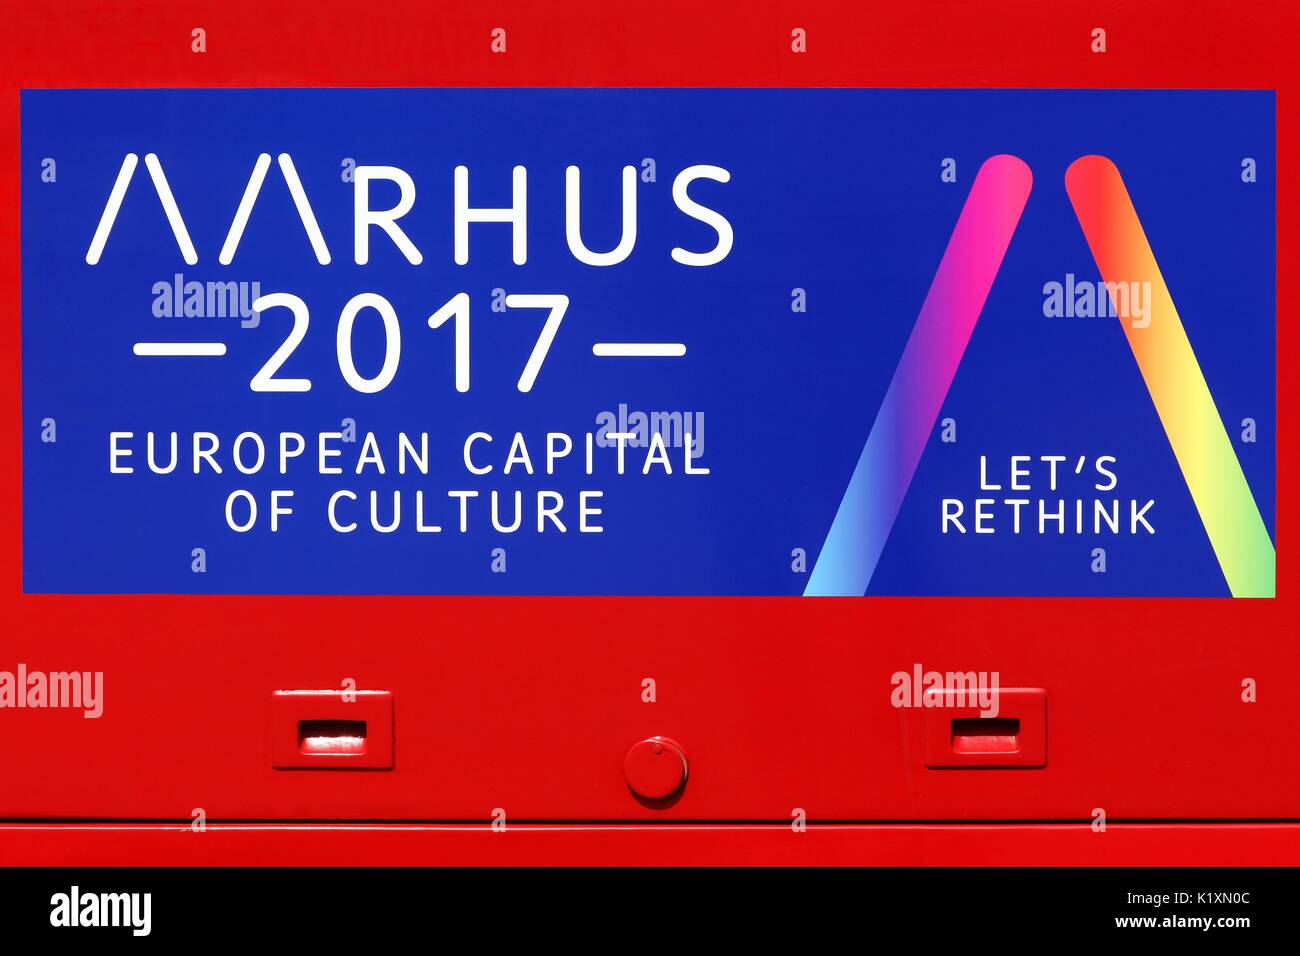 Aarhus, Danemark - 6 juillet 2017 : Aarhus 2017 signe sur un bus d'Aarhus annonce capitale européenne de la culture en 2017 Banque D'Images